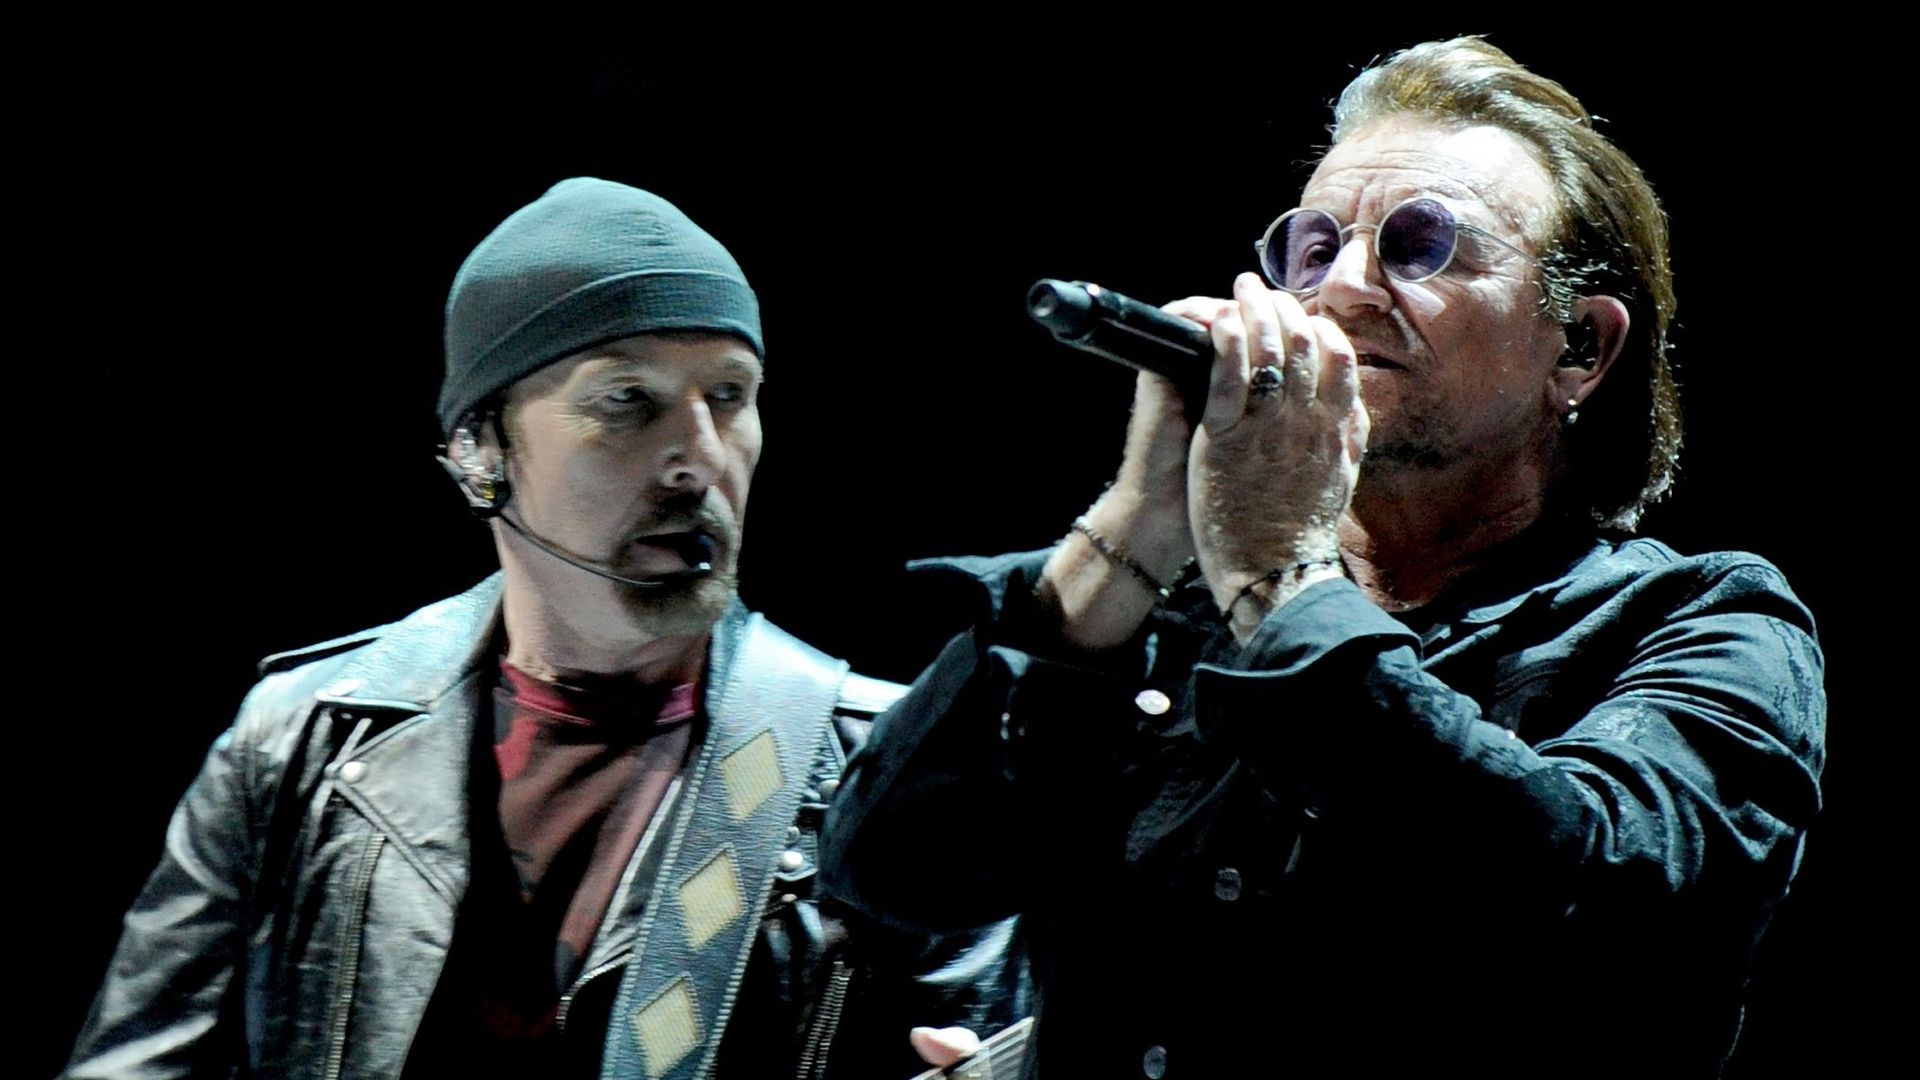 Bono et The Edge (U2) en discussion pour l’écriture de la musique d’un biopic.